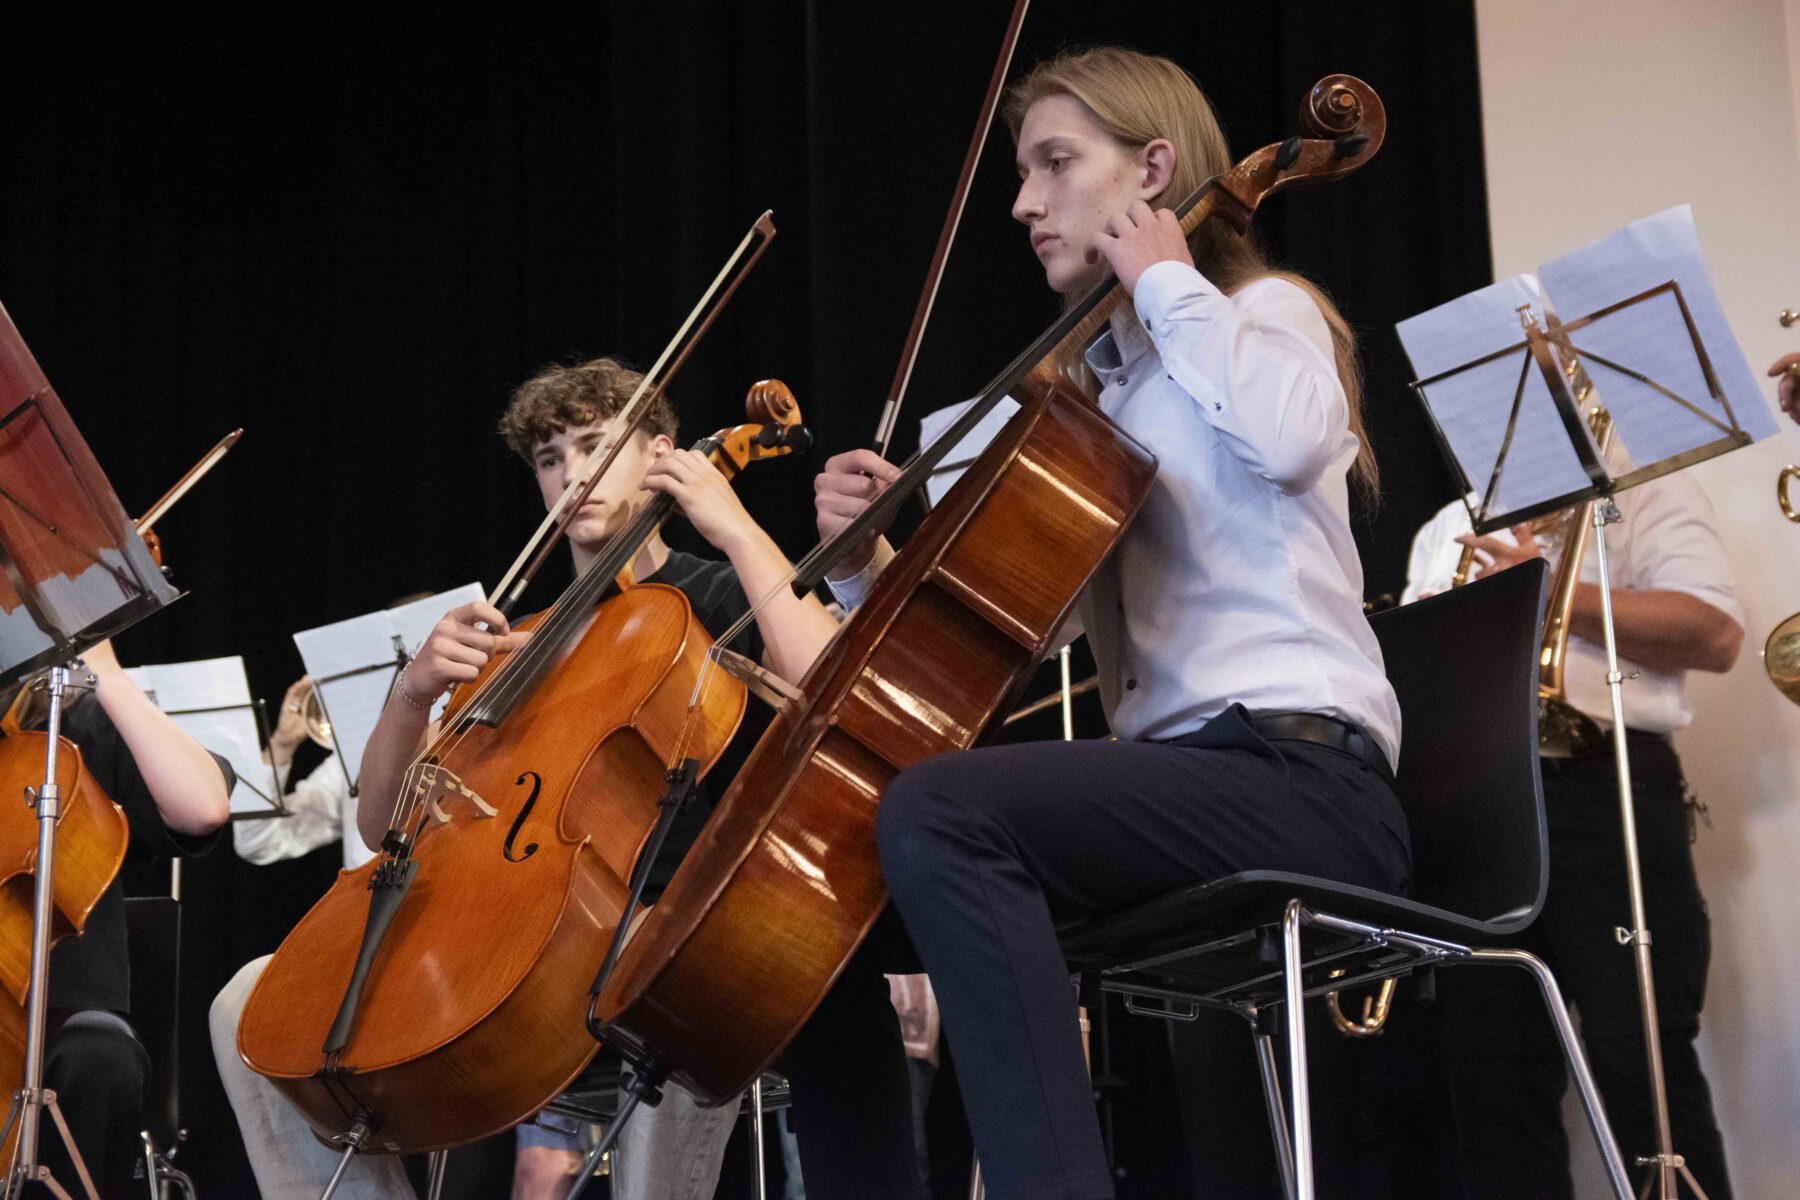 Das Sommerkonzert der Burghauser Musikschule überzeugte mit einem abwechslungsreichen Programm und hohem Niveau der Musikschülerinnen und –schüler. © Stadt Burghausen/ebh